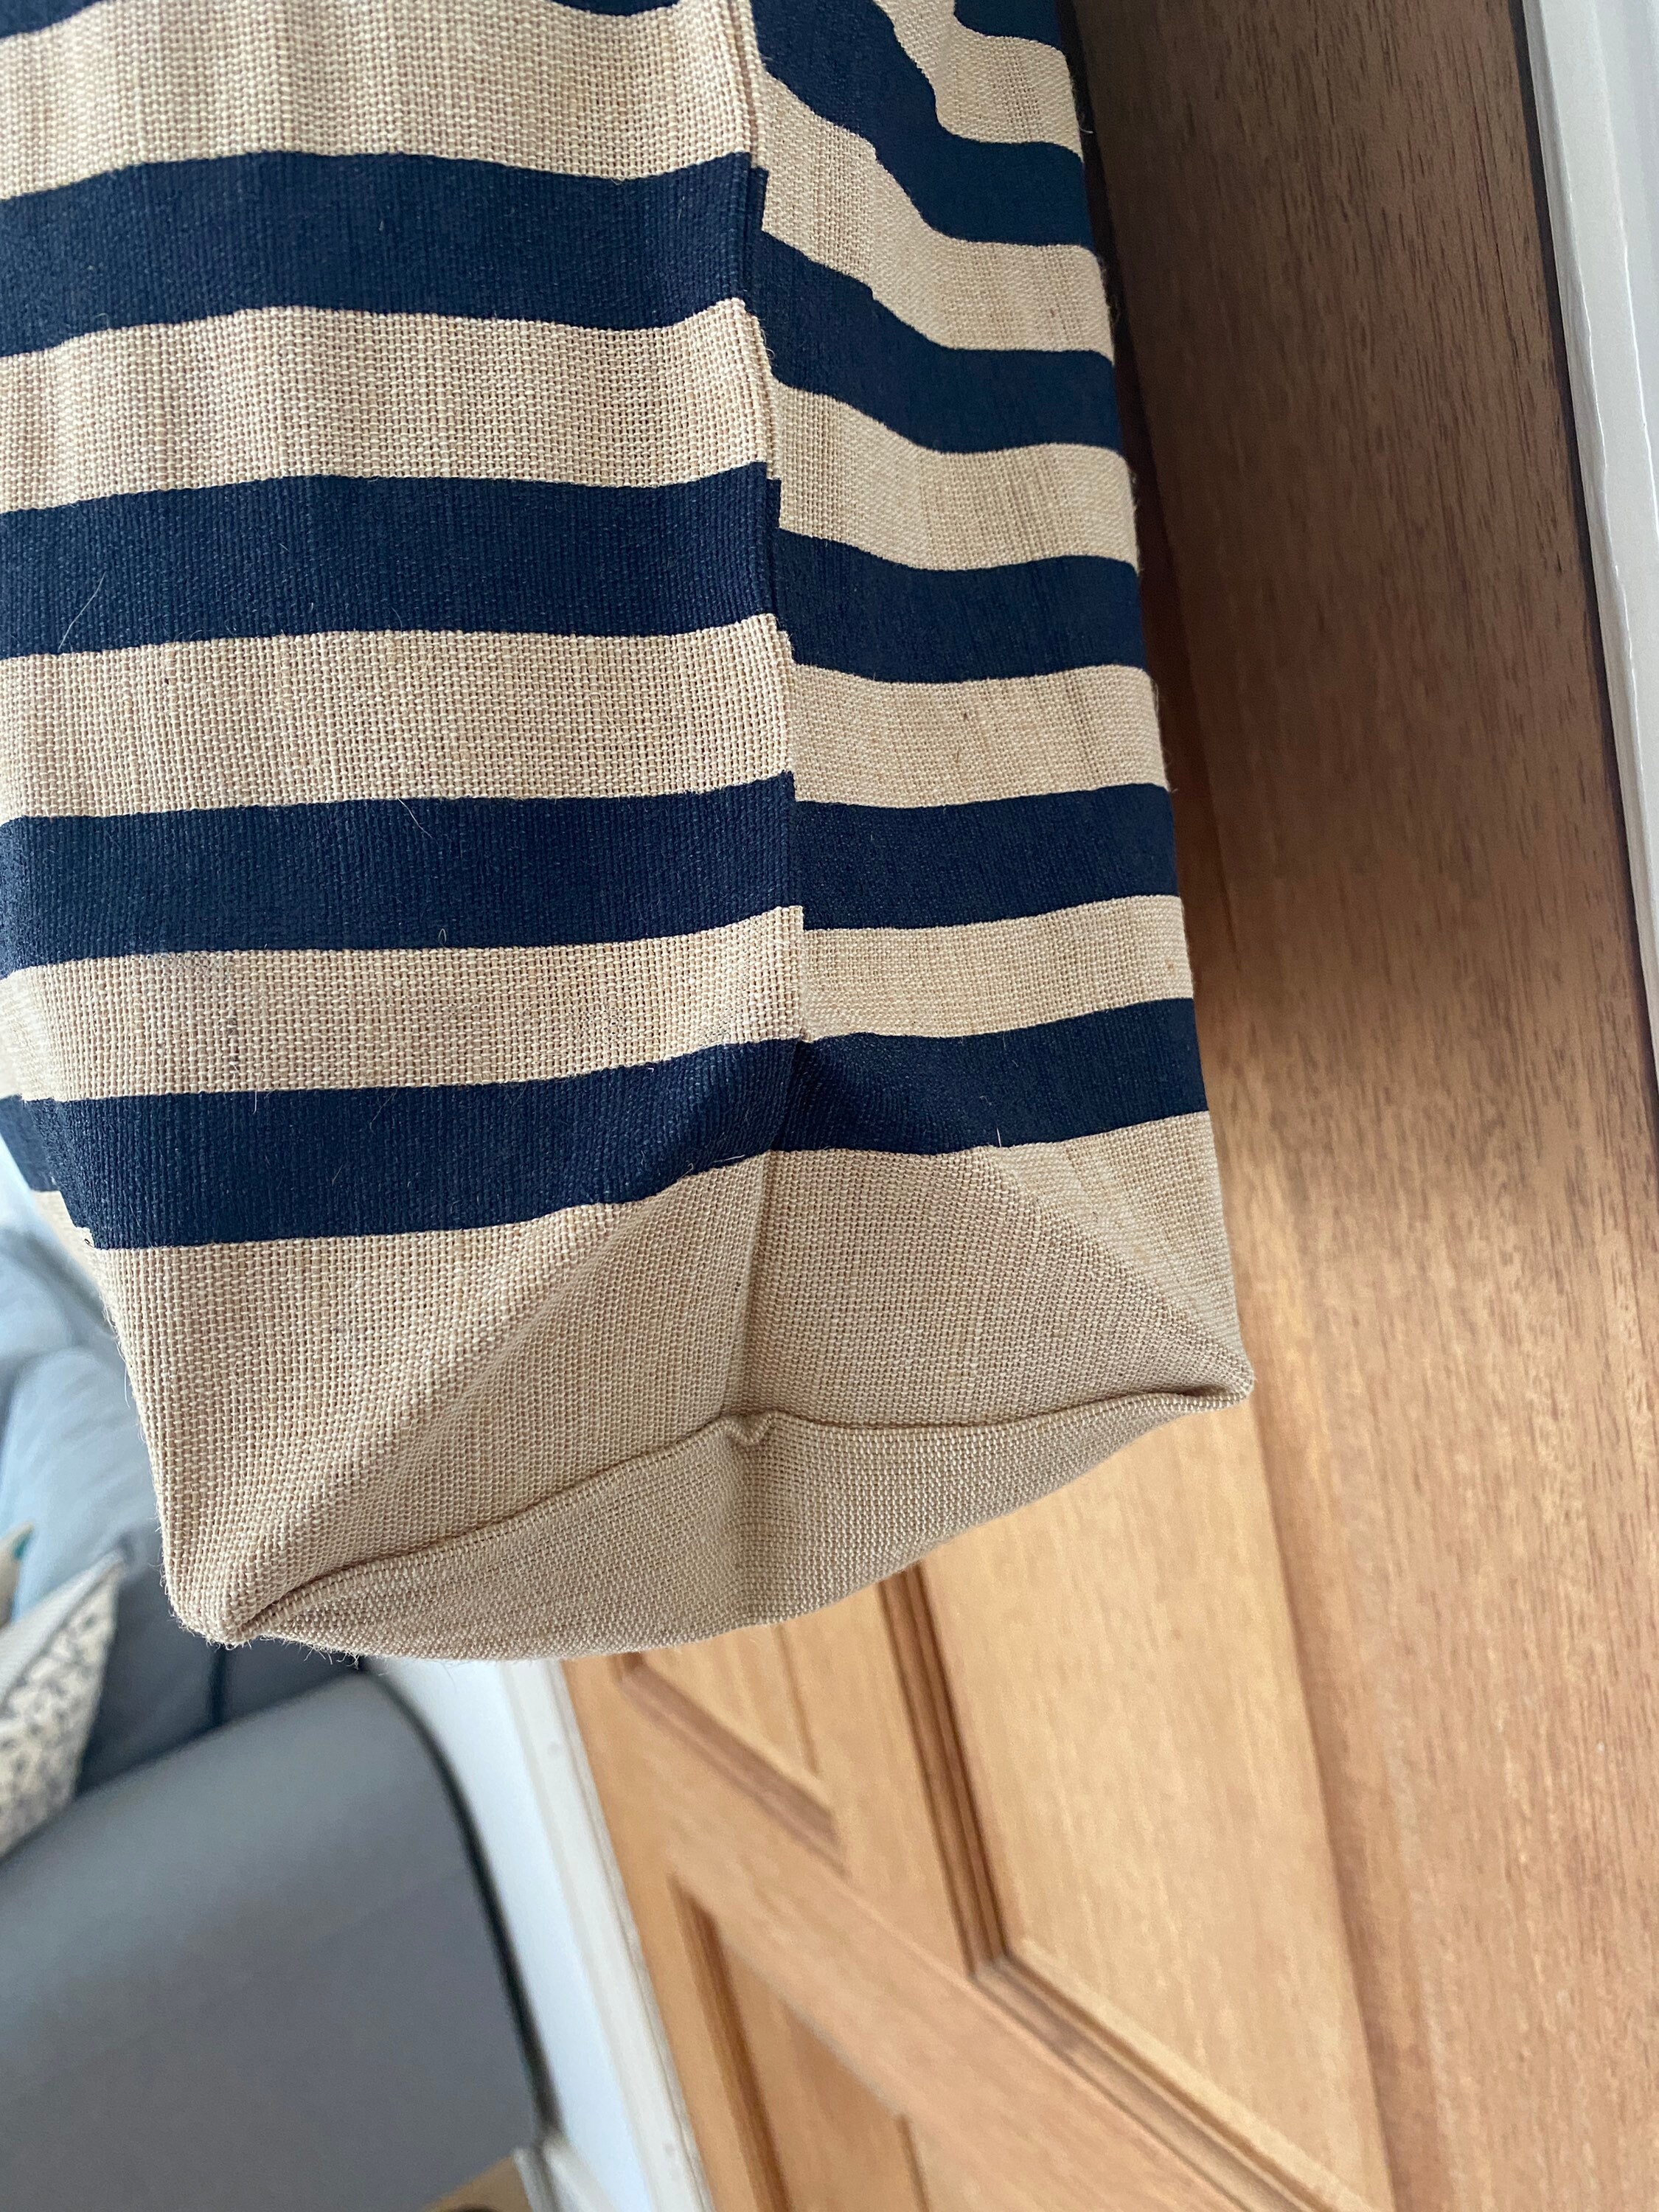 LARGE BEACH BAG ToTE bag Large Shopper shoulder bag tote | Etsy